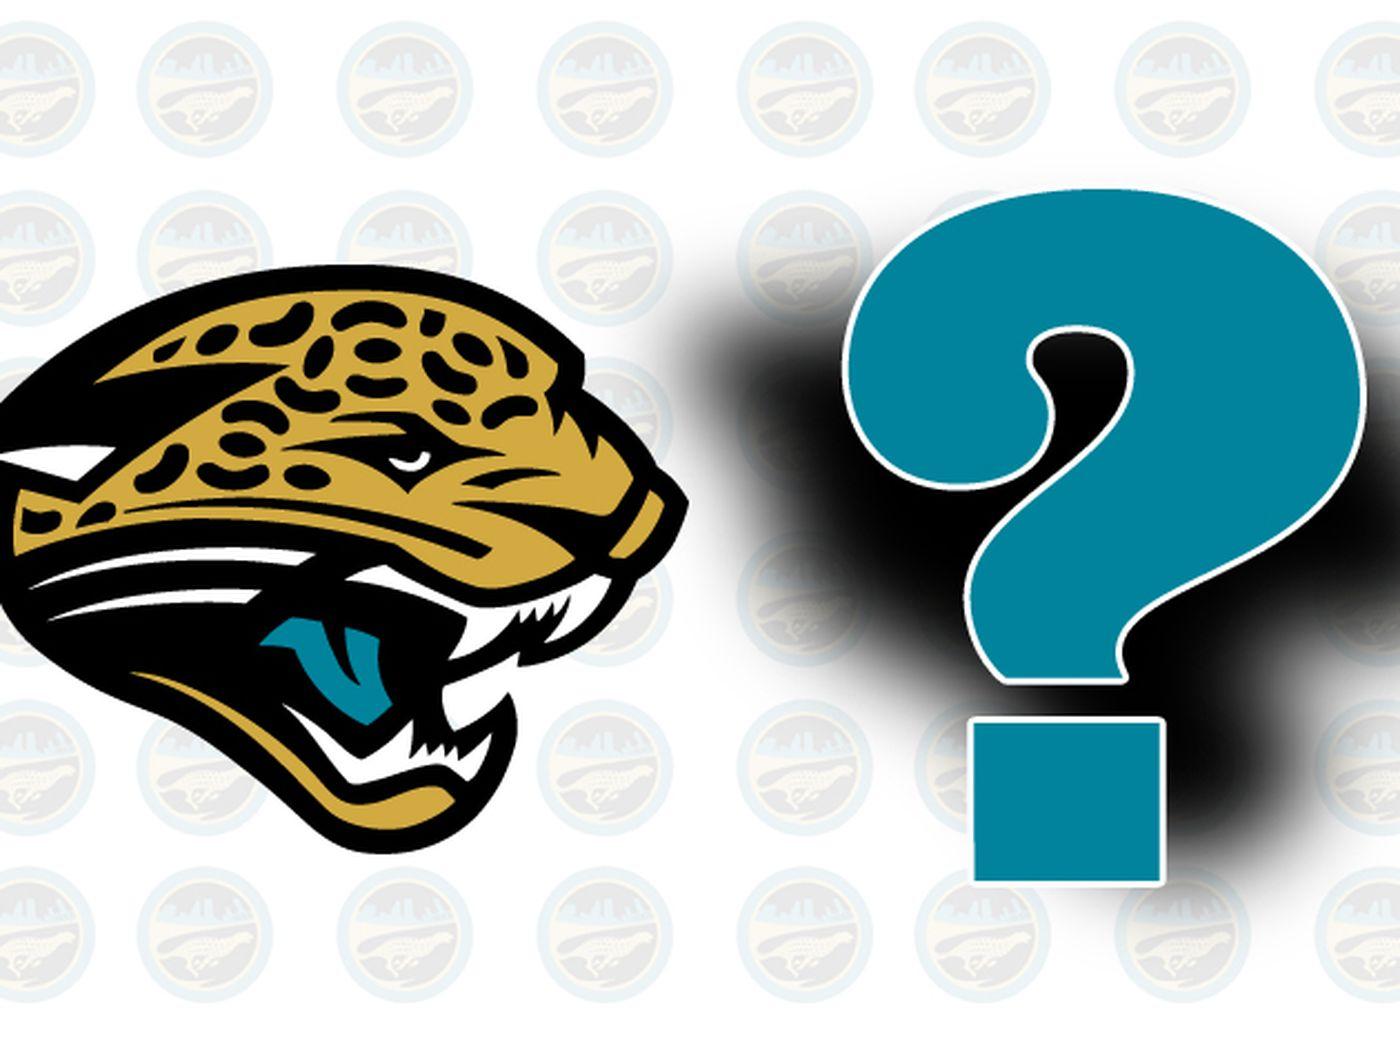 Jaguars New Logo - Jaguars new logo released - Big Cat Country